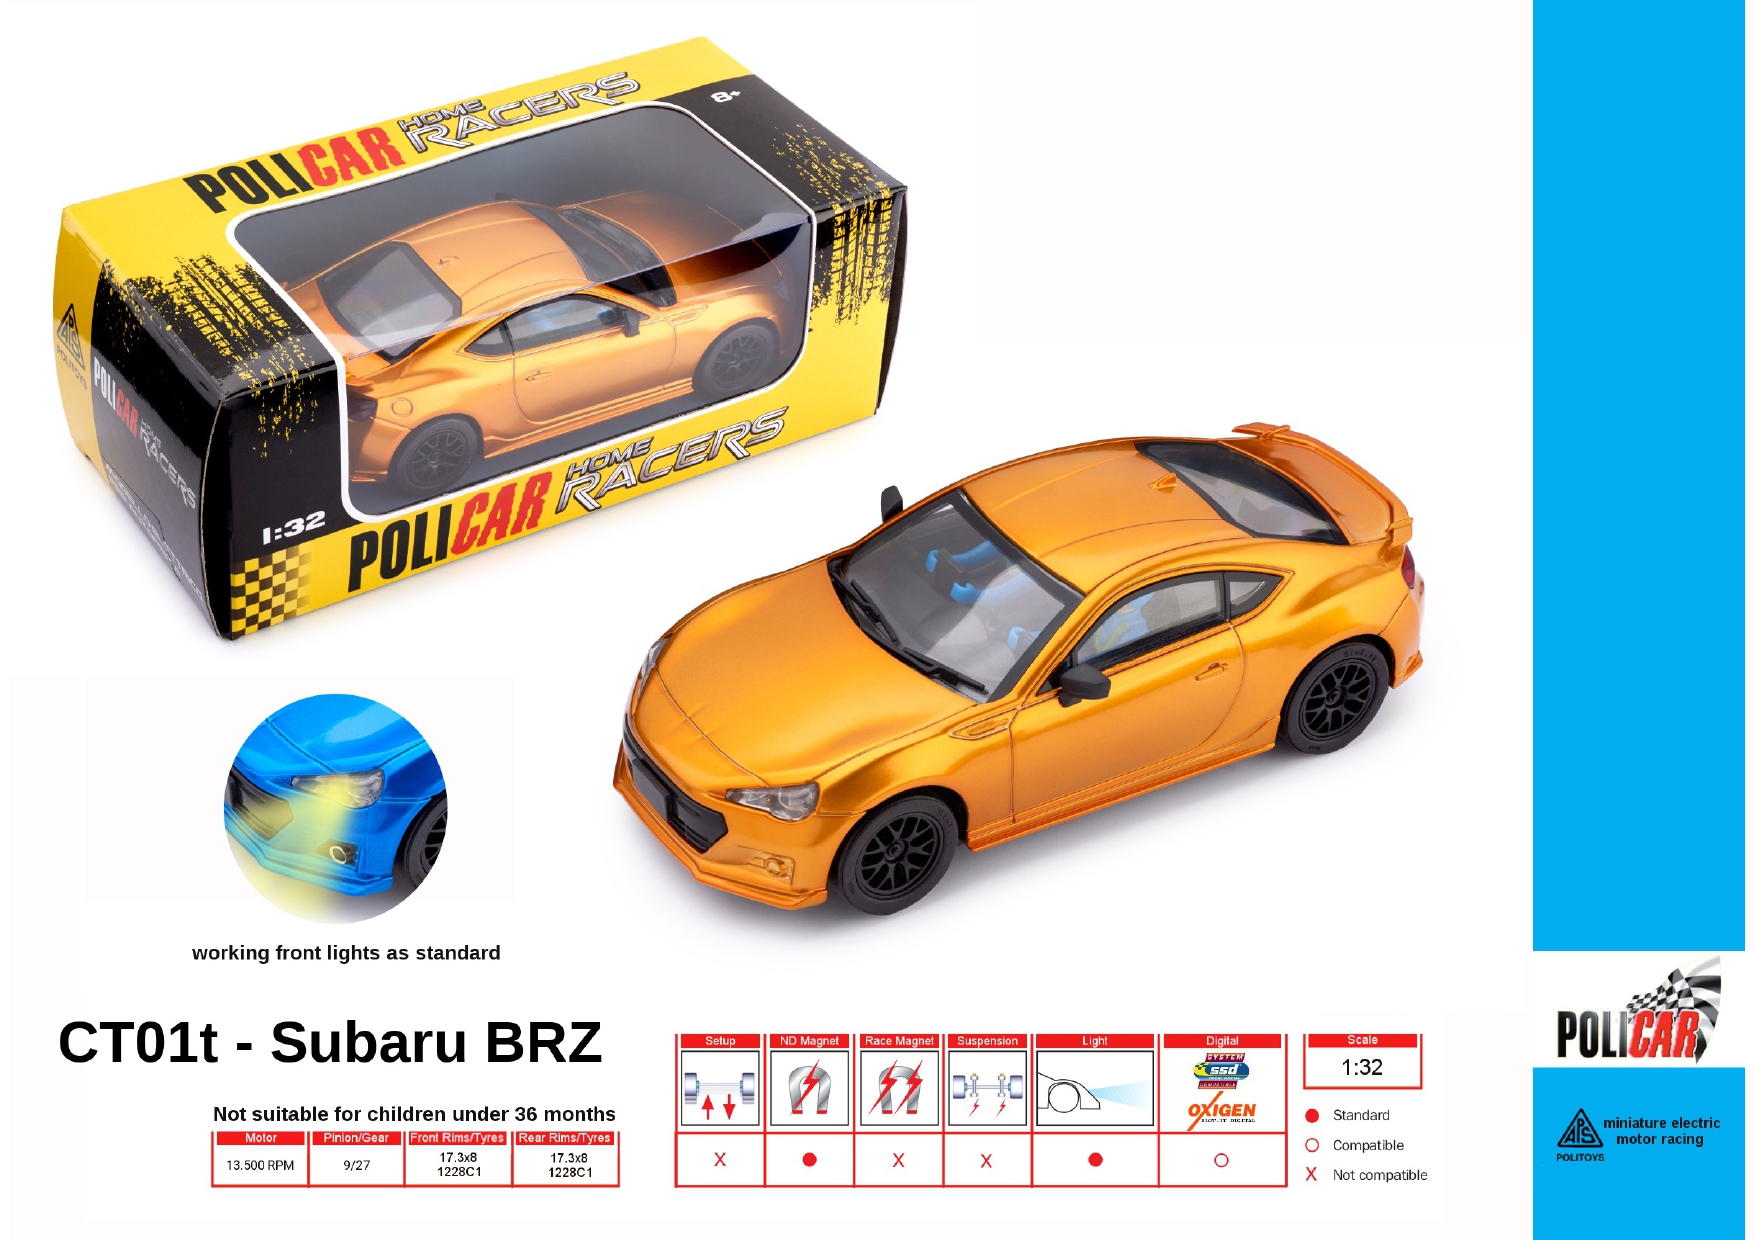 Policar Subaru BRZ 1:32 vari colori - Subaru Brz various colors 1:32